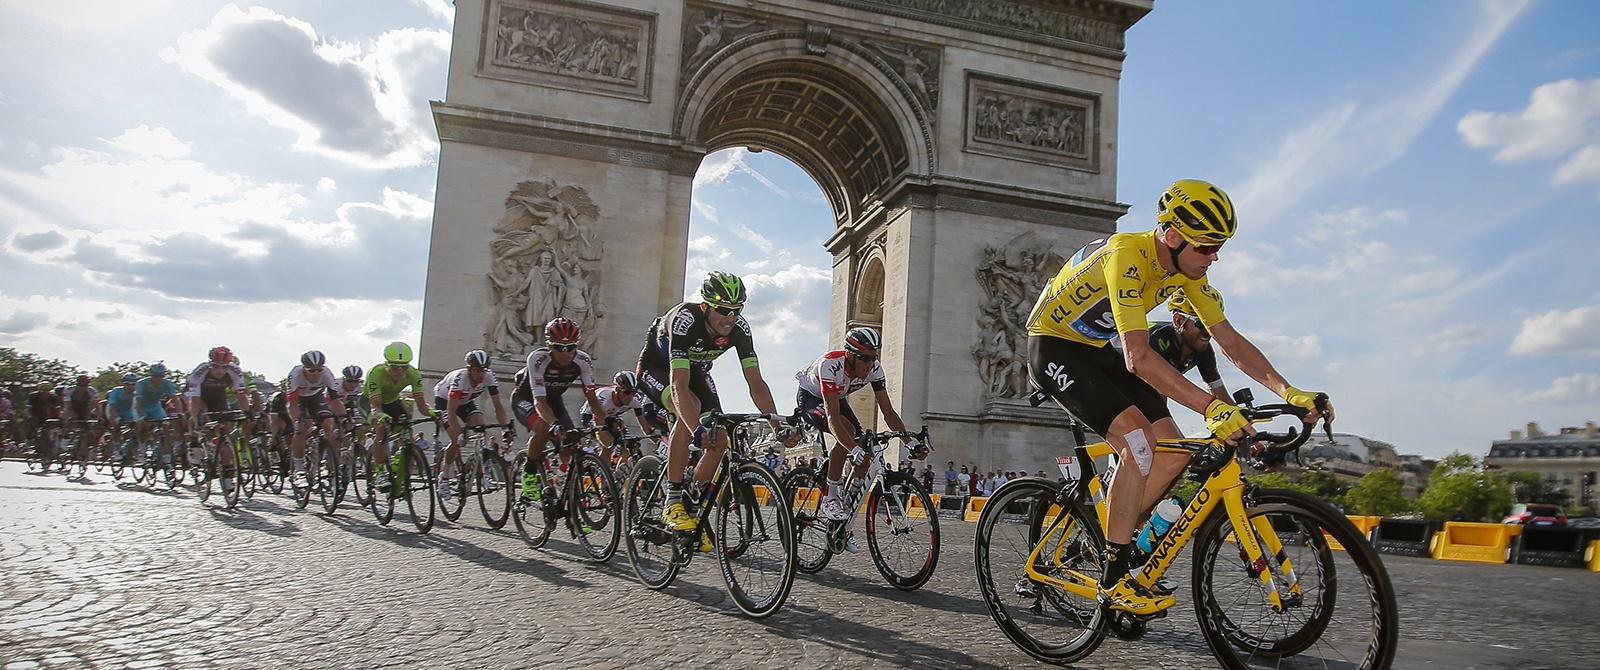 Tour de France Paris Finish Race Viewing Event